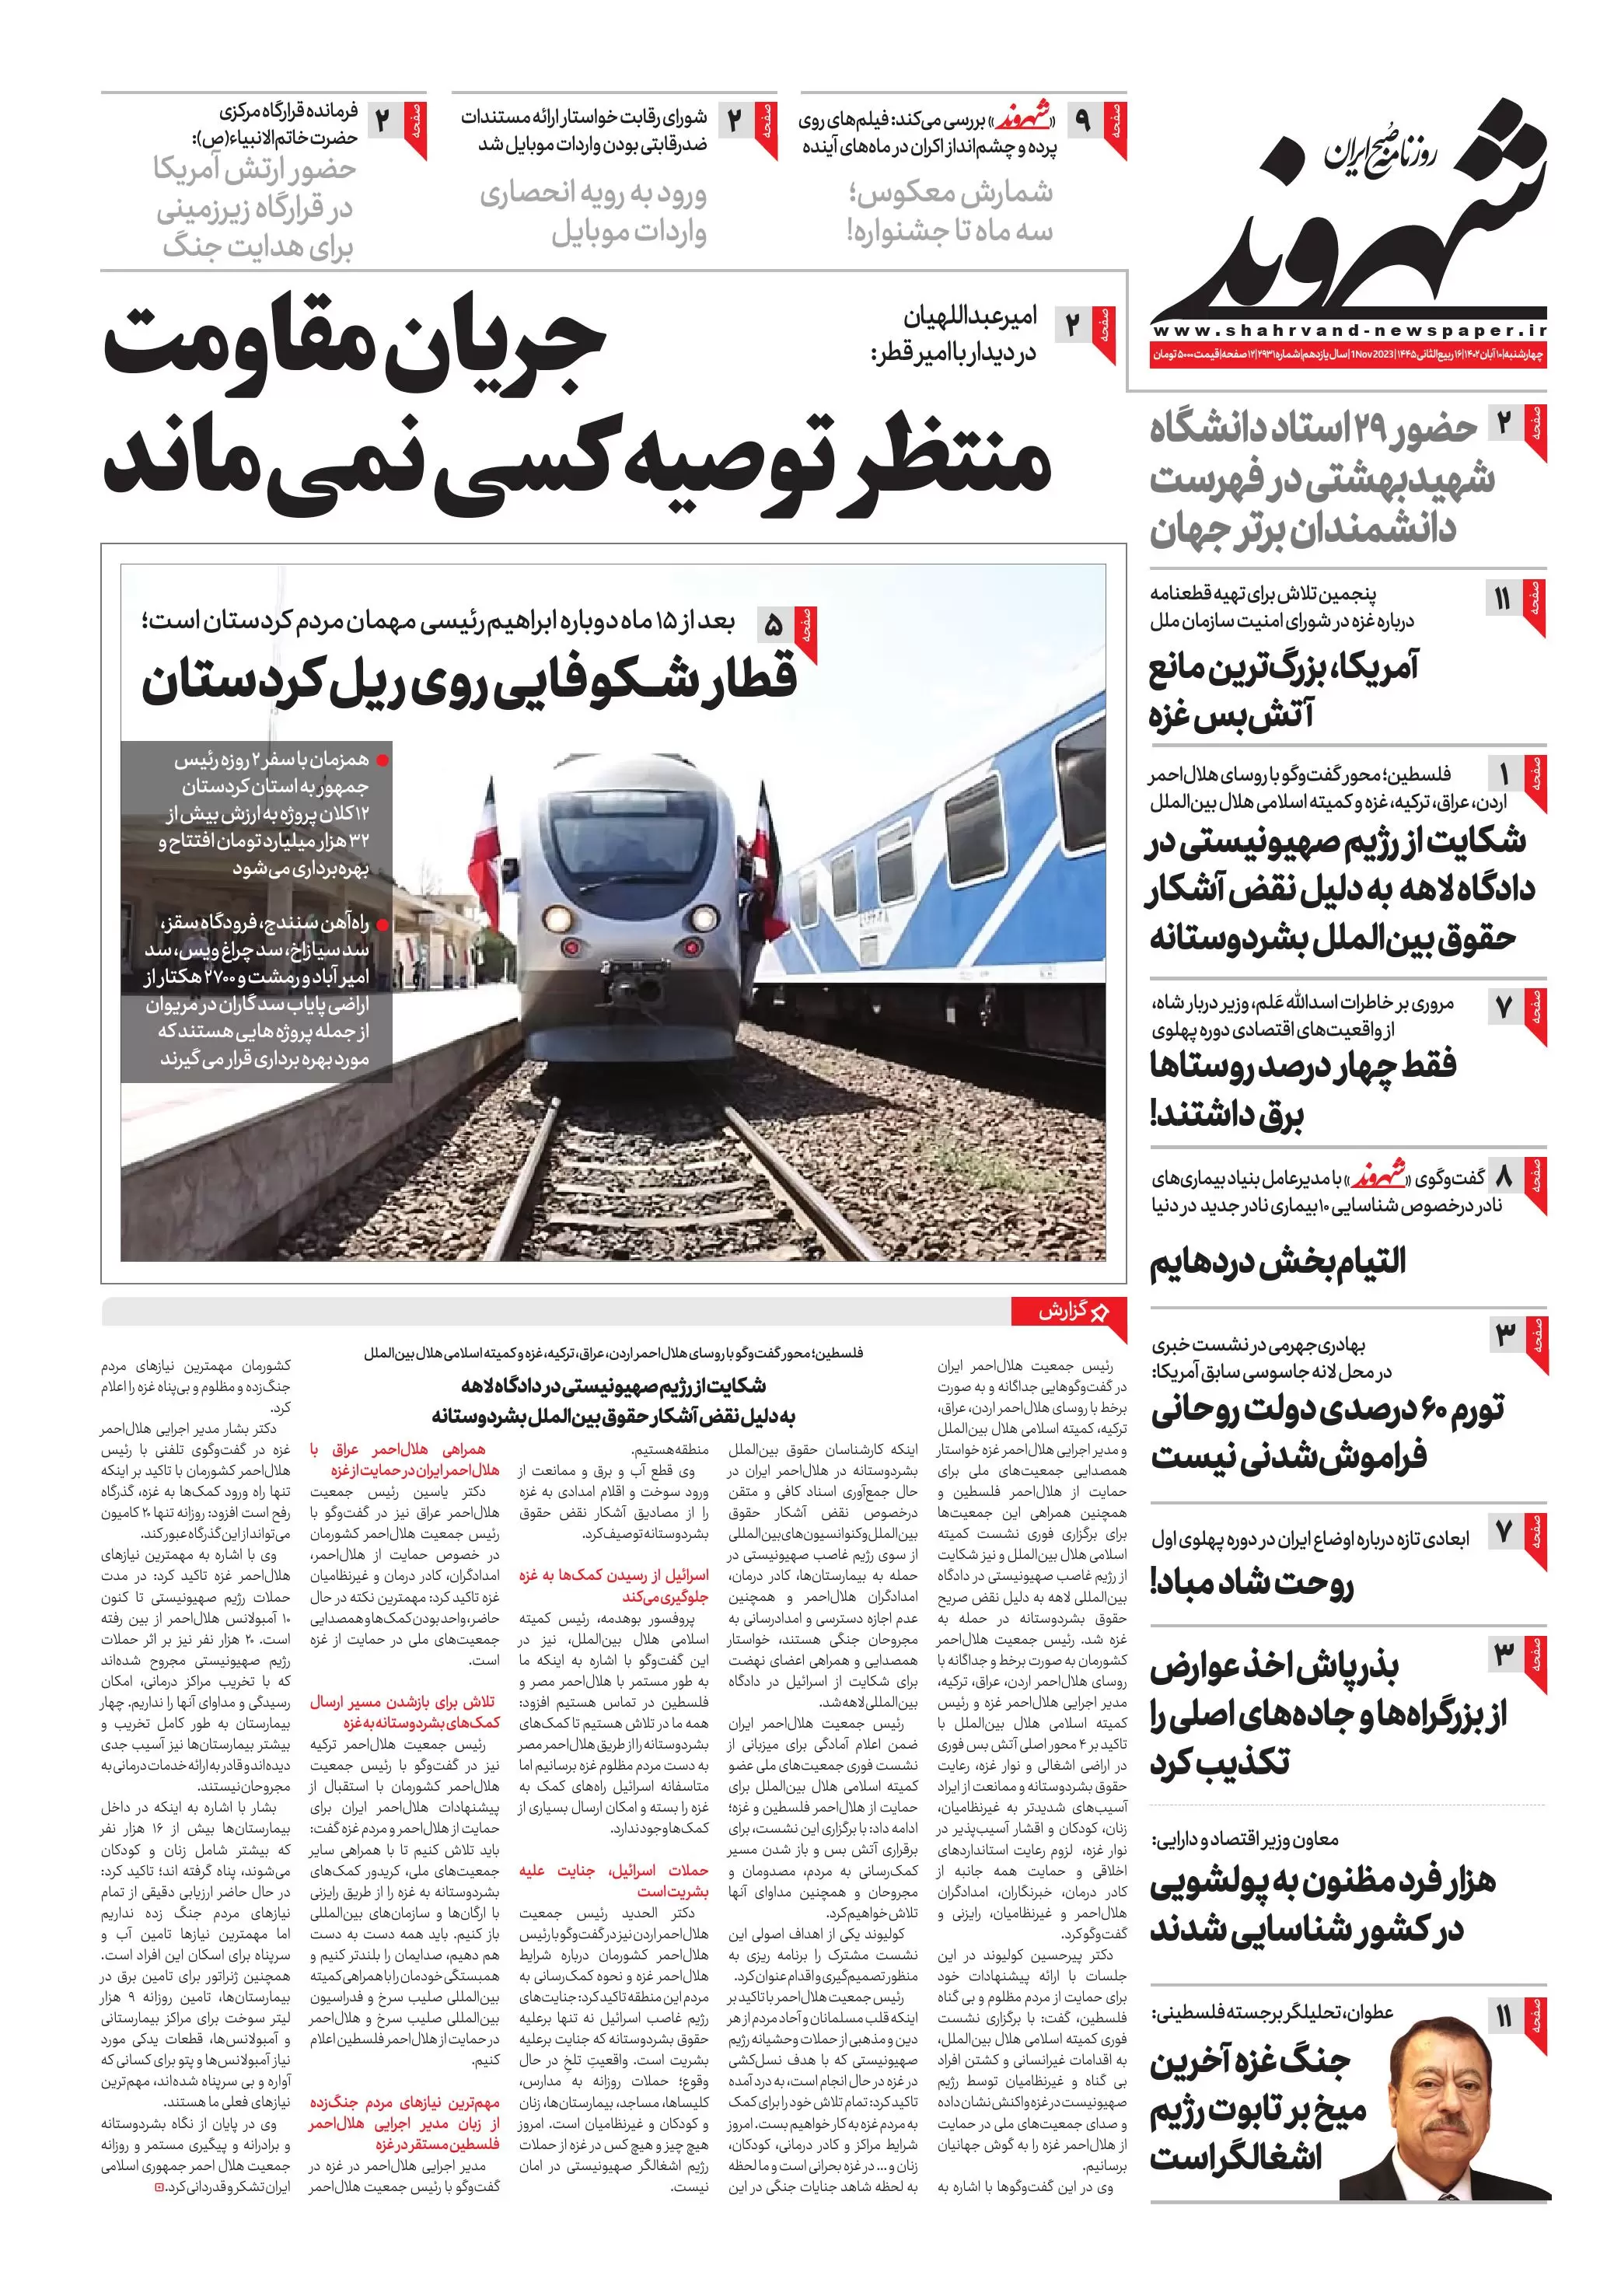 مرور صفحه اول روزنامه های صبخ ایران در چهارشنبه 10 ابان 1402 